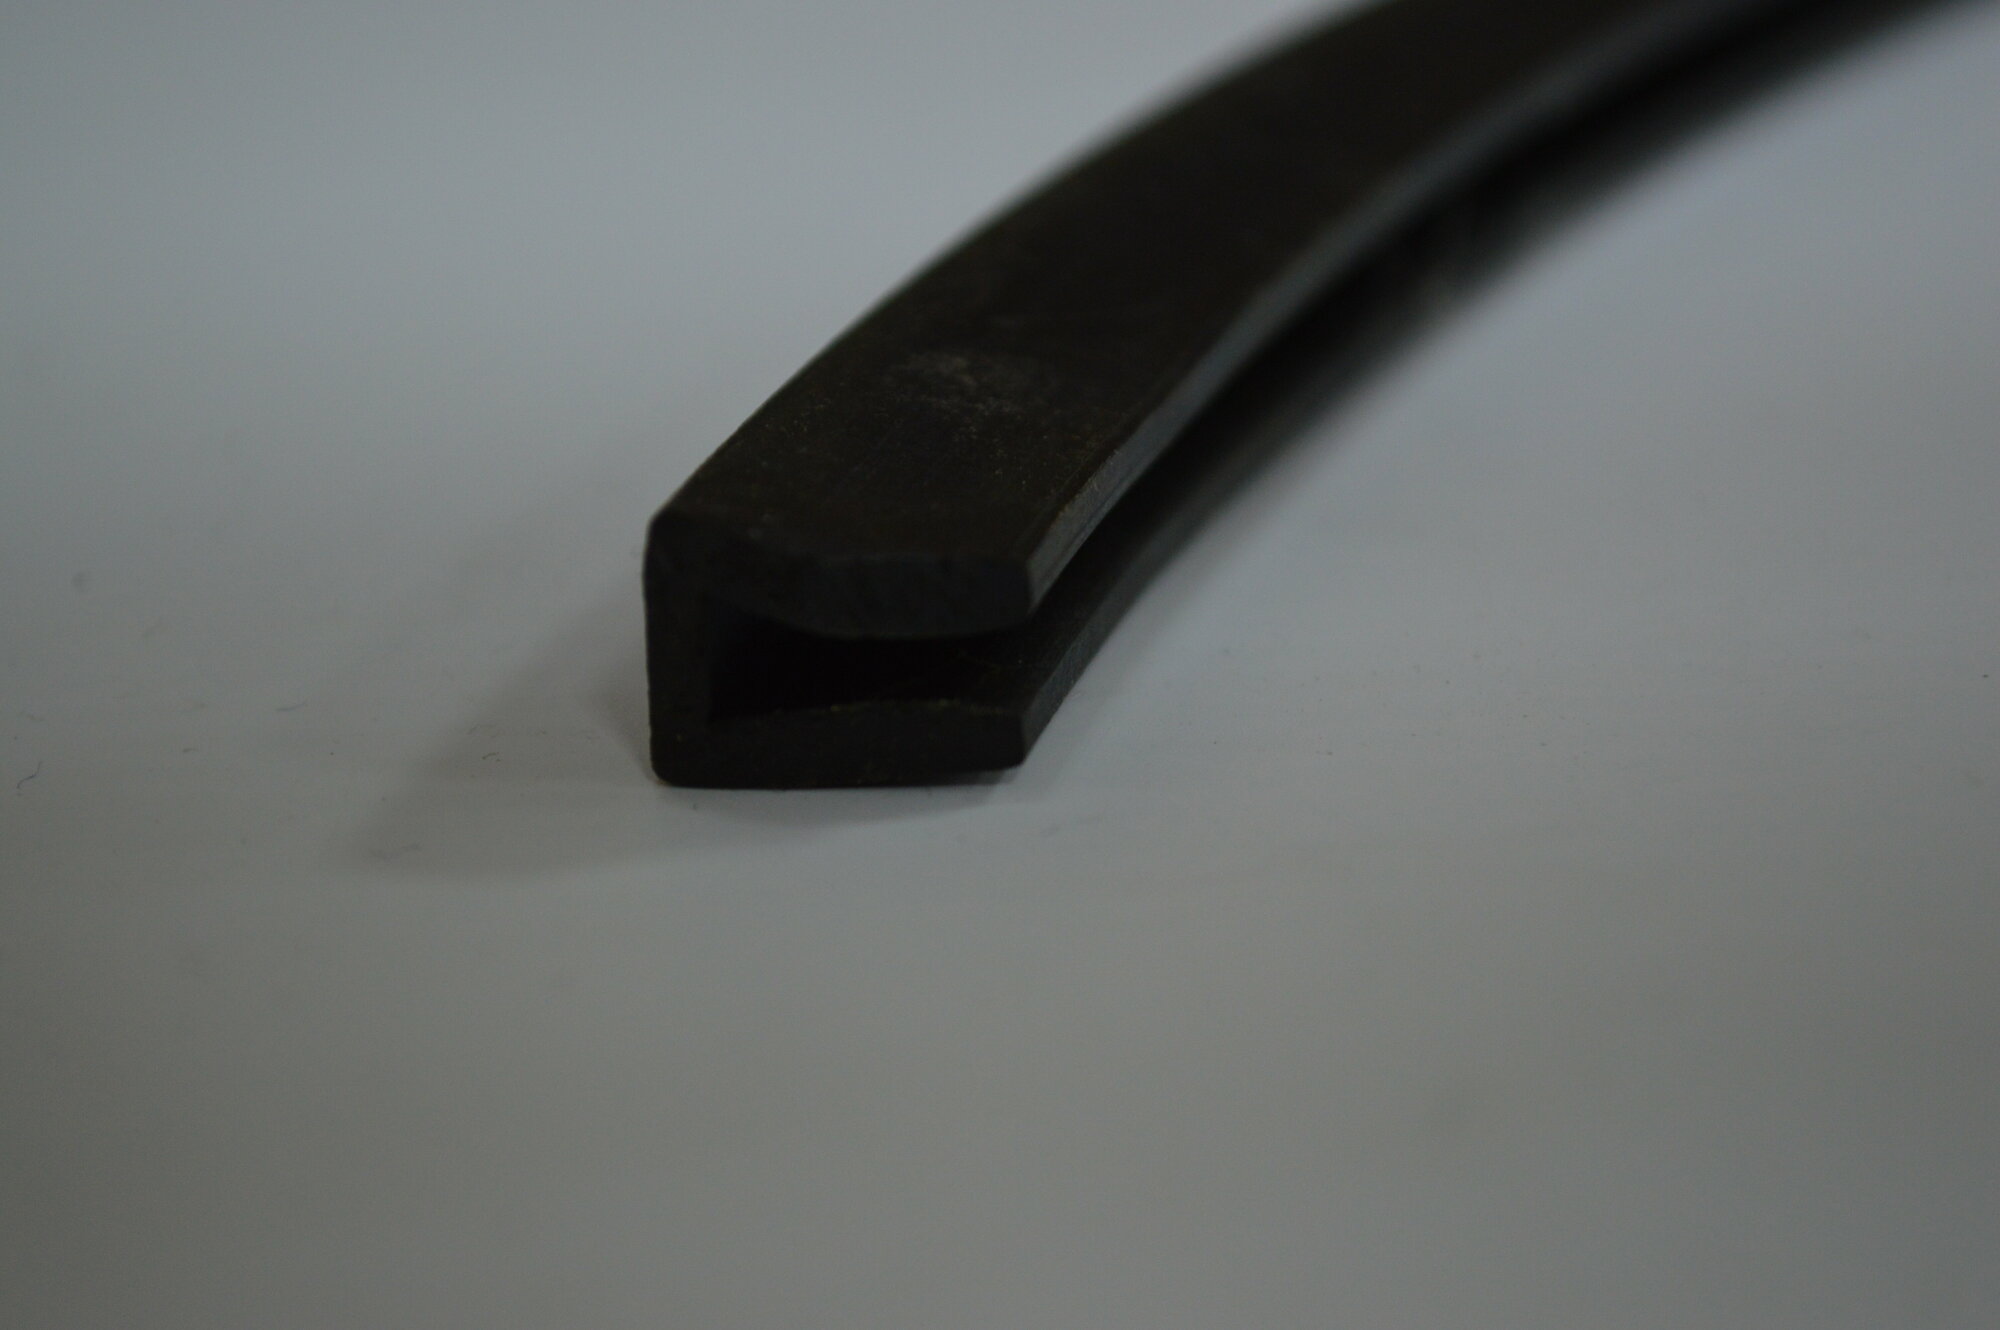 Профиль резиновый черный П-образный для уплотнения стекол и метала. Толщина стекла 10 мм. Длина 3 метра.